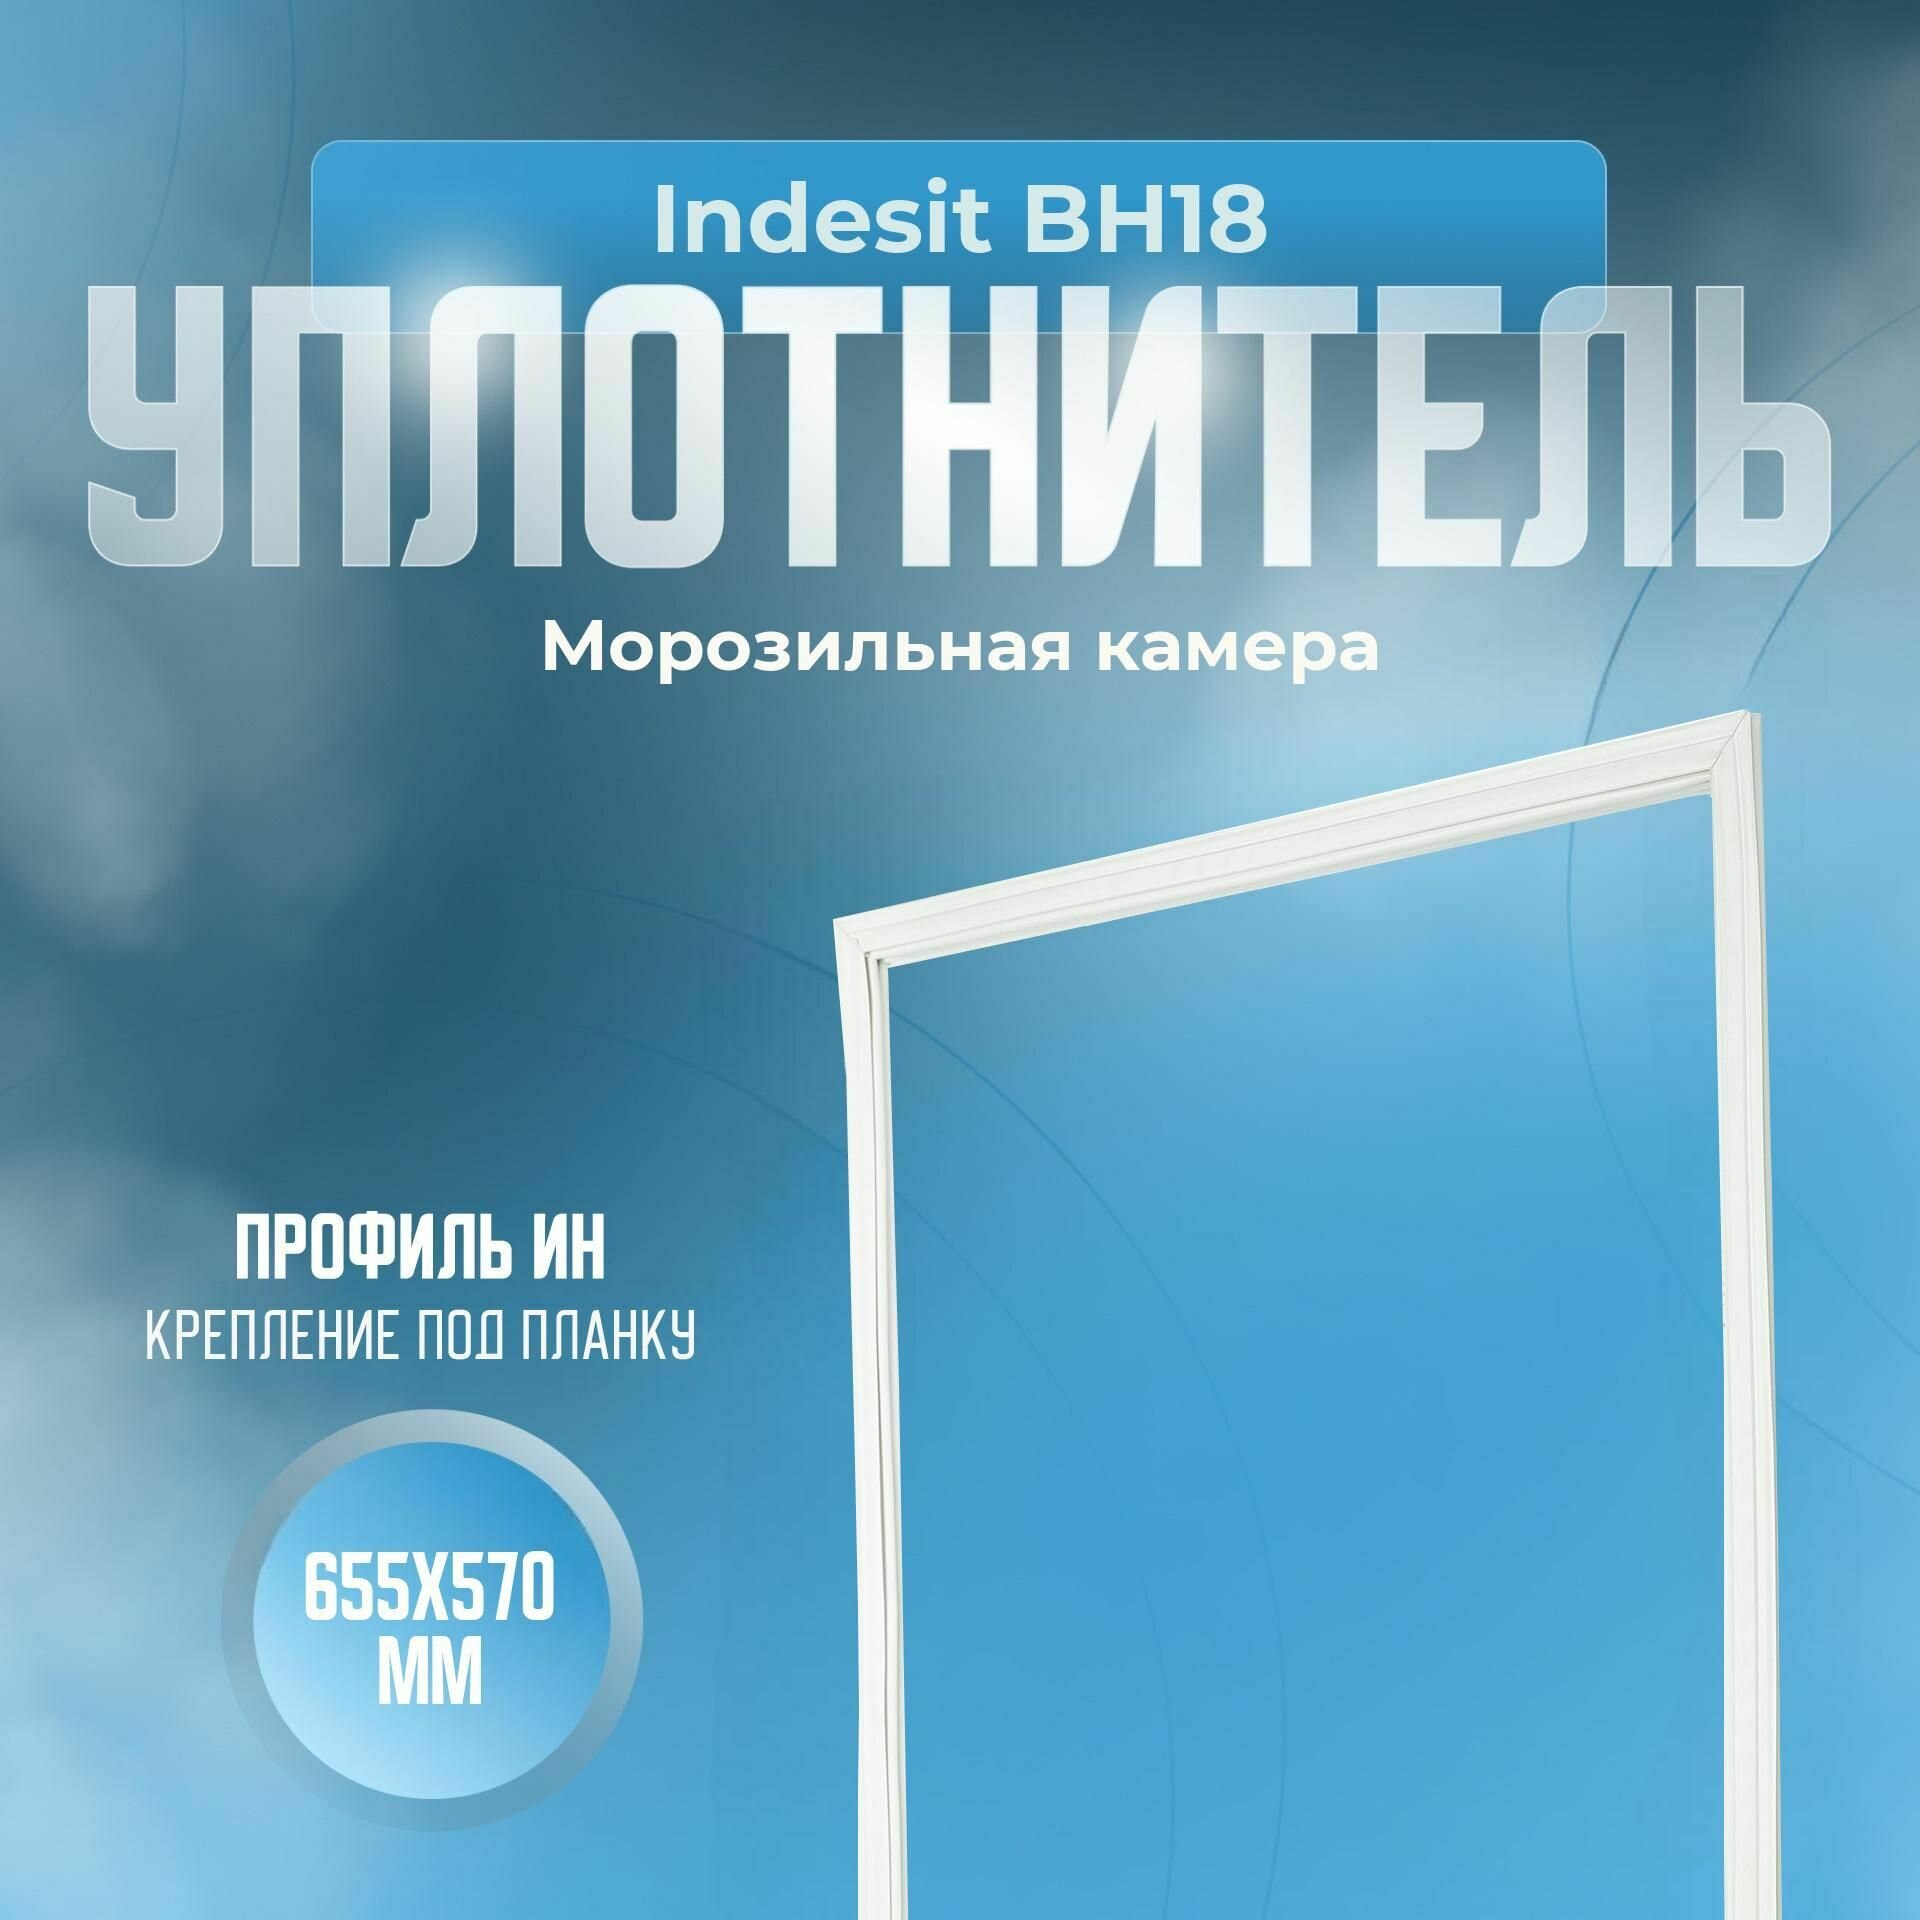 Уплотнитель Indesit BH18. м. к, Размер - 655x570 мм. ИН